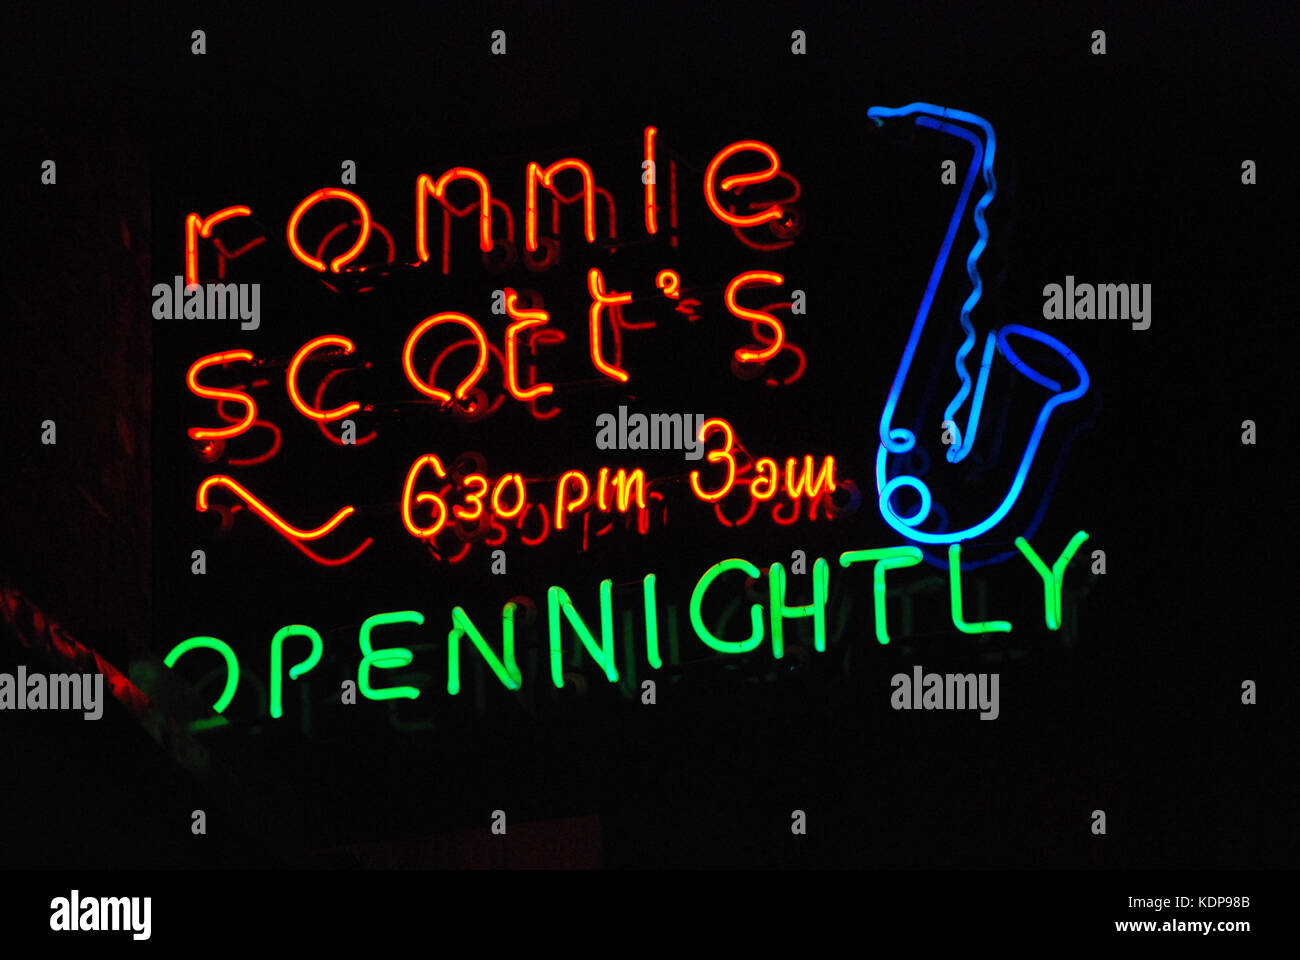 2000, Nahaufnahme der Bunten neon Werbung Beschilderungen für den berühmten Jazz Club und bis spät in die Nacht geöffneten Bar, Ronnie Scott's, Soho, London, England, UK. Durch die Musiker Ronnie Scott und Pete King 1959, es war der führende West End jazz Veranstaltungsort seitdem. Stockfoto